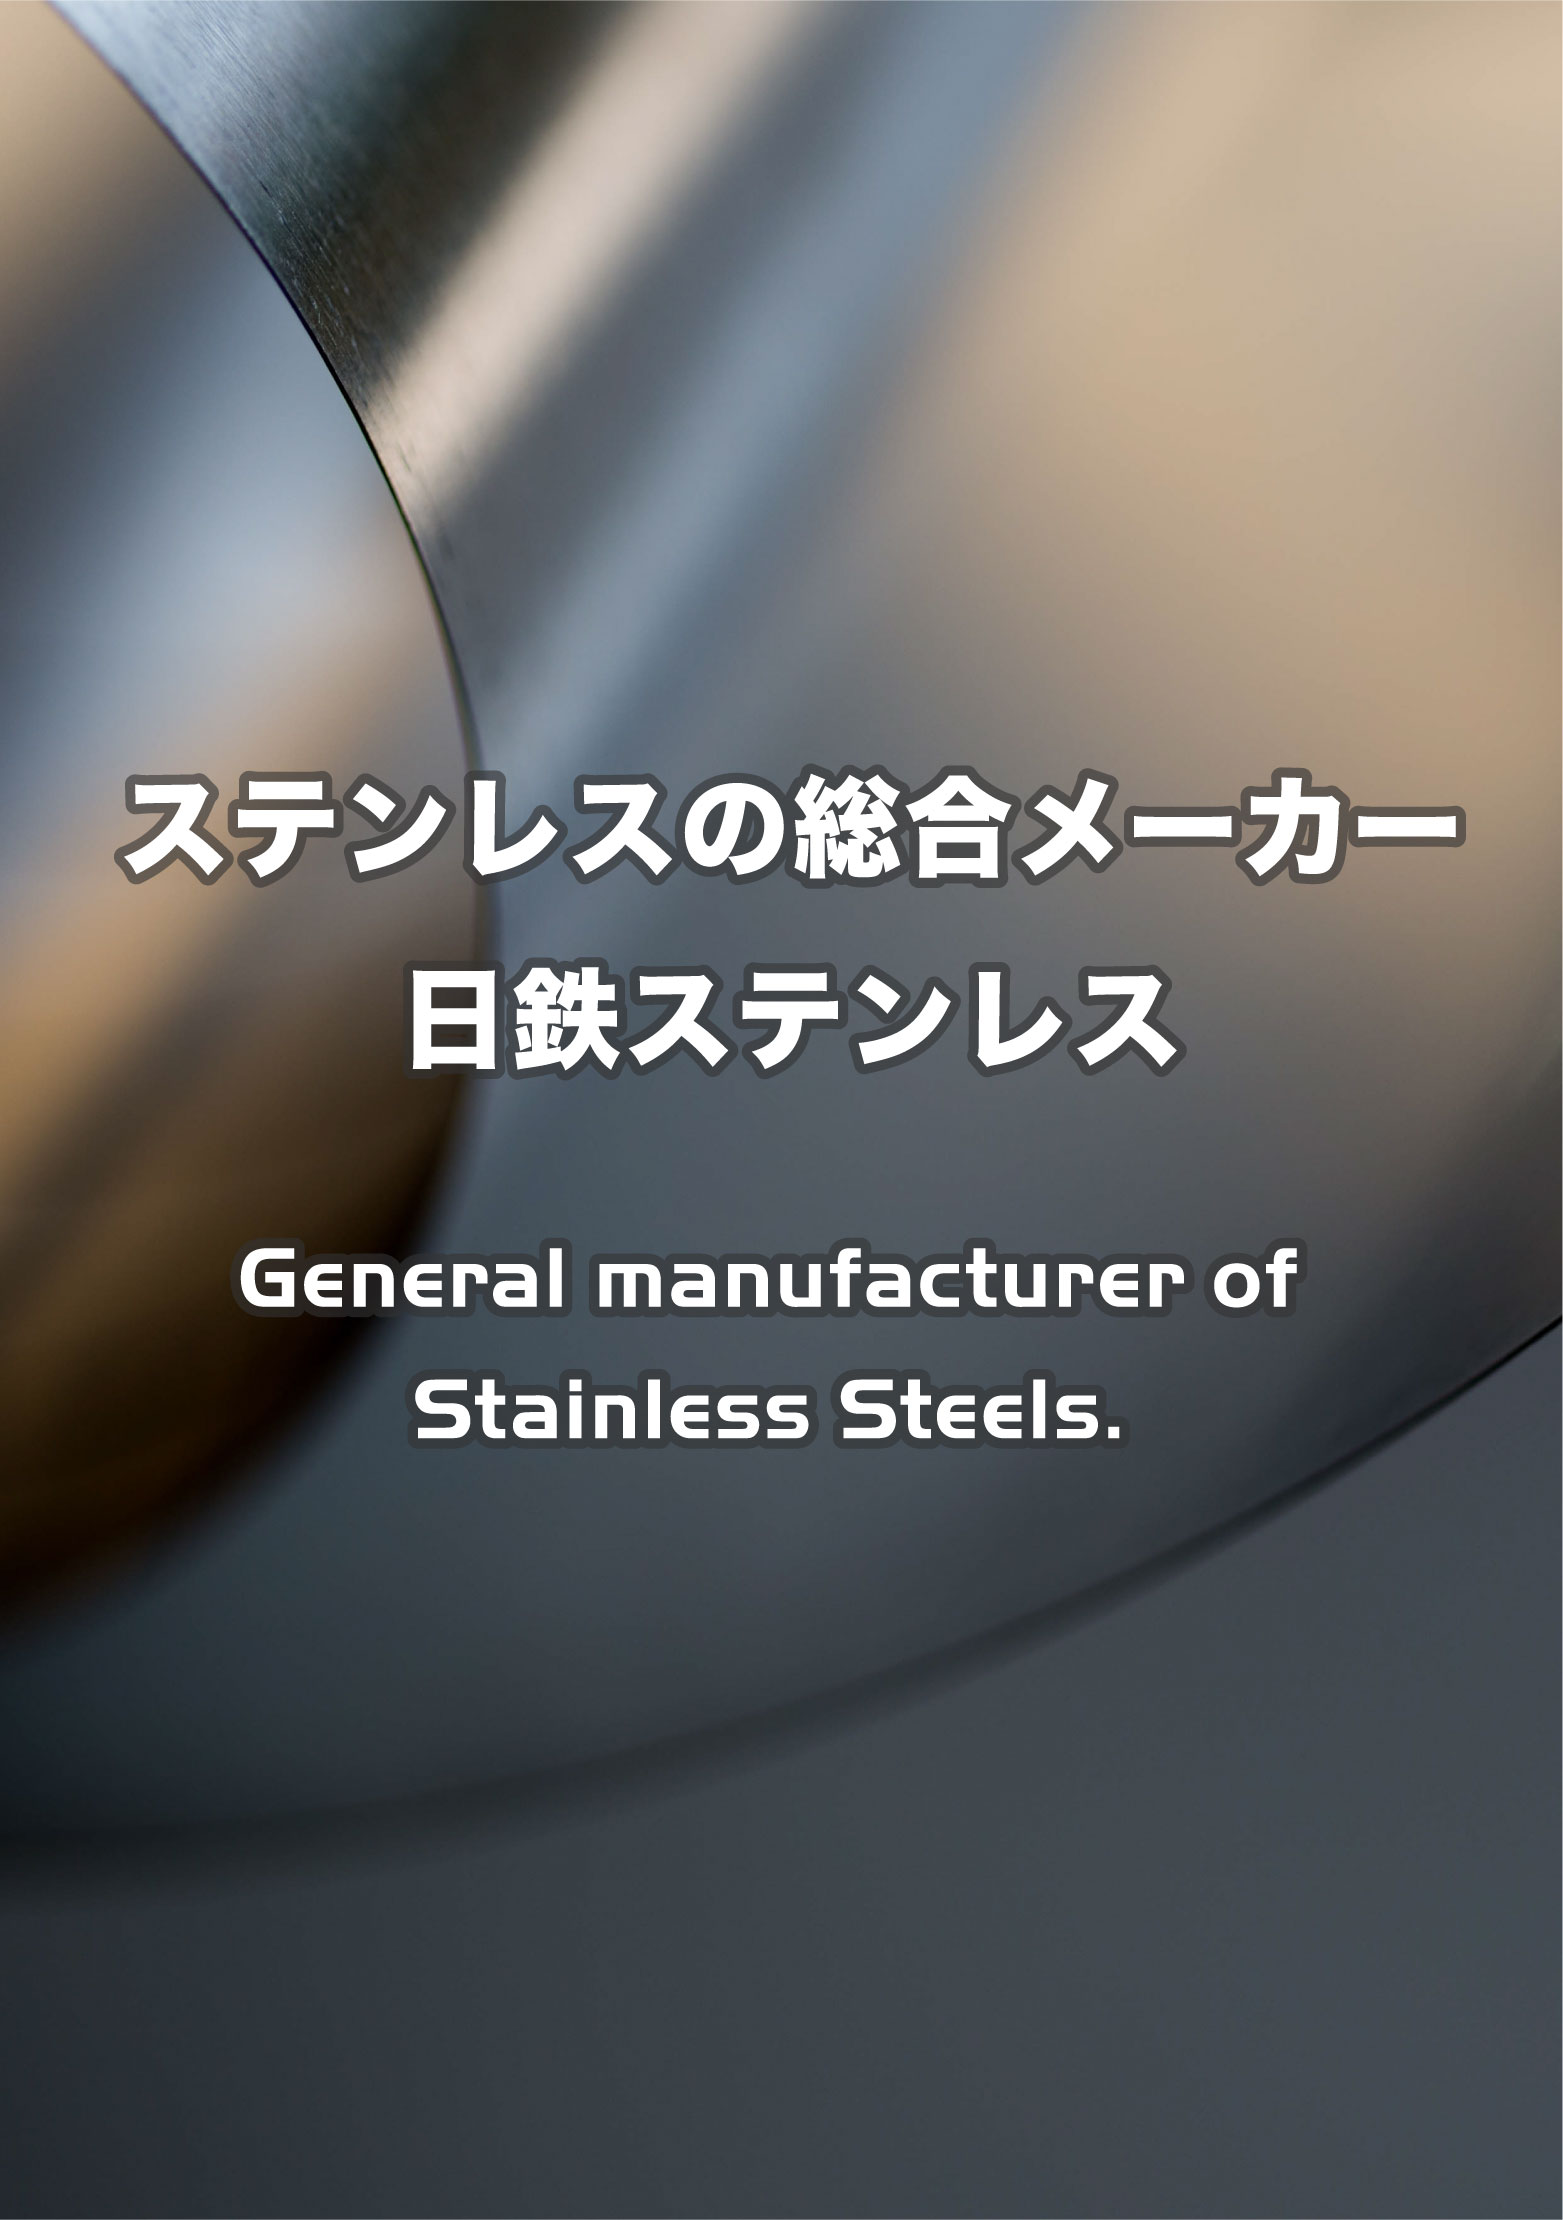 ステンレスの総合メーカー 日鉄ステンレス General manufacturer of Stainless Steels.